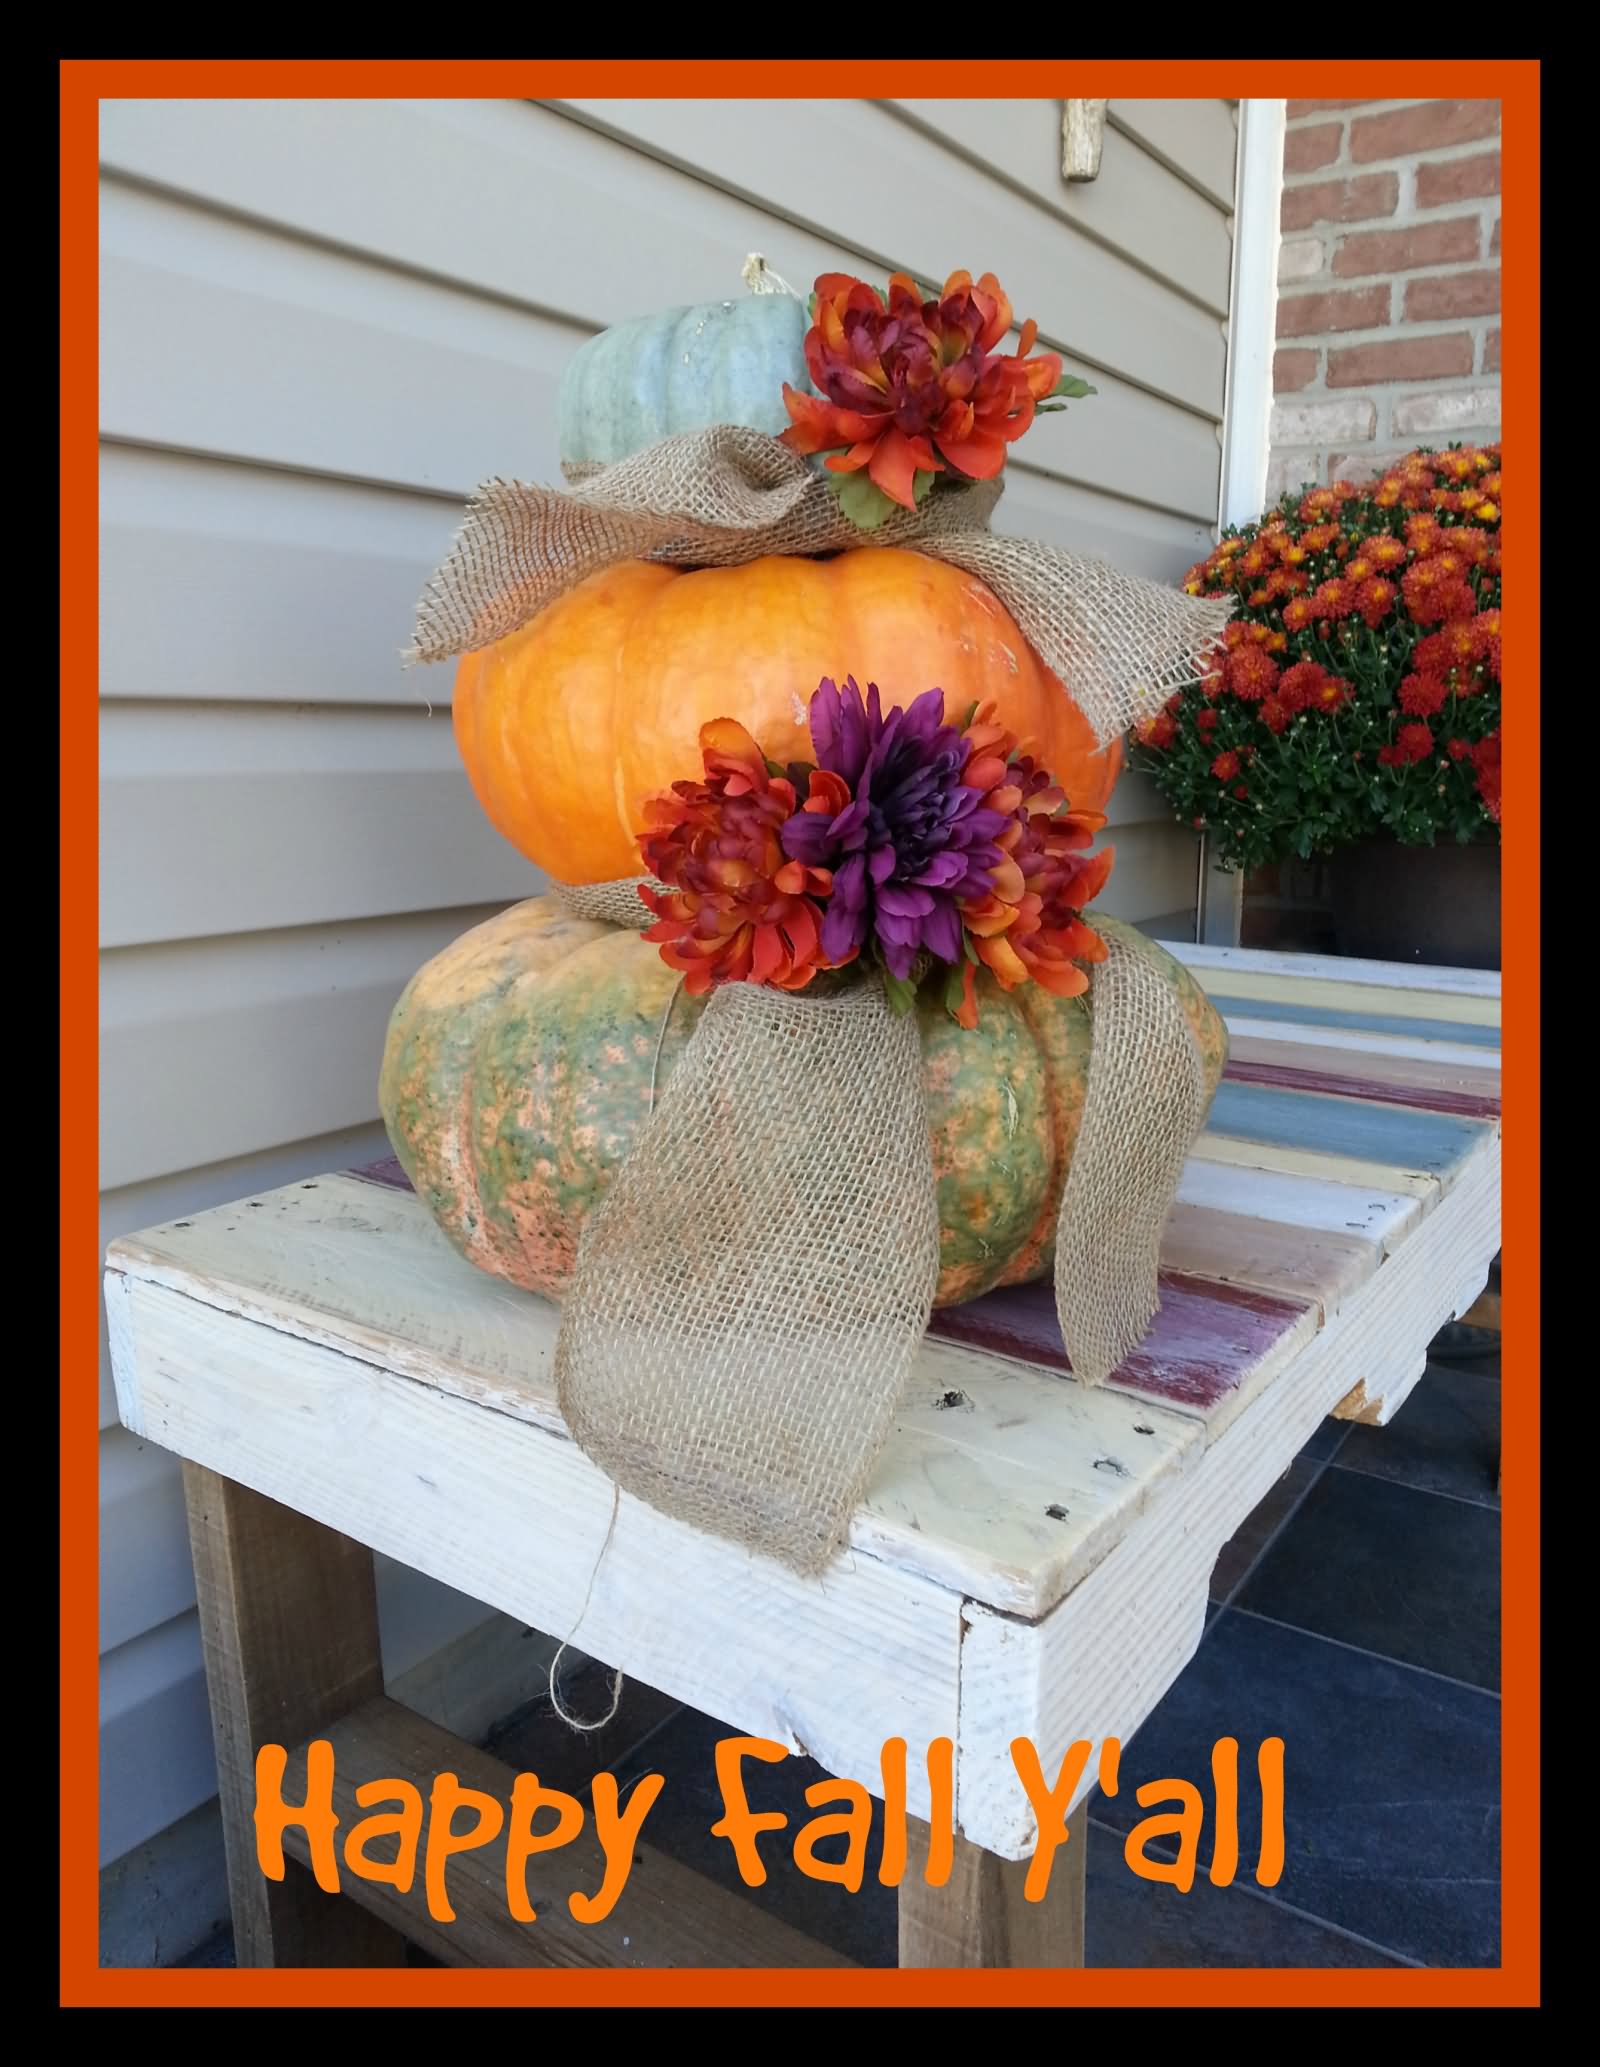 Happy Fall Y'all Greeting Card